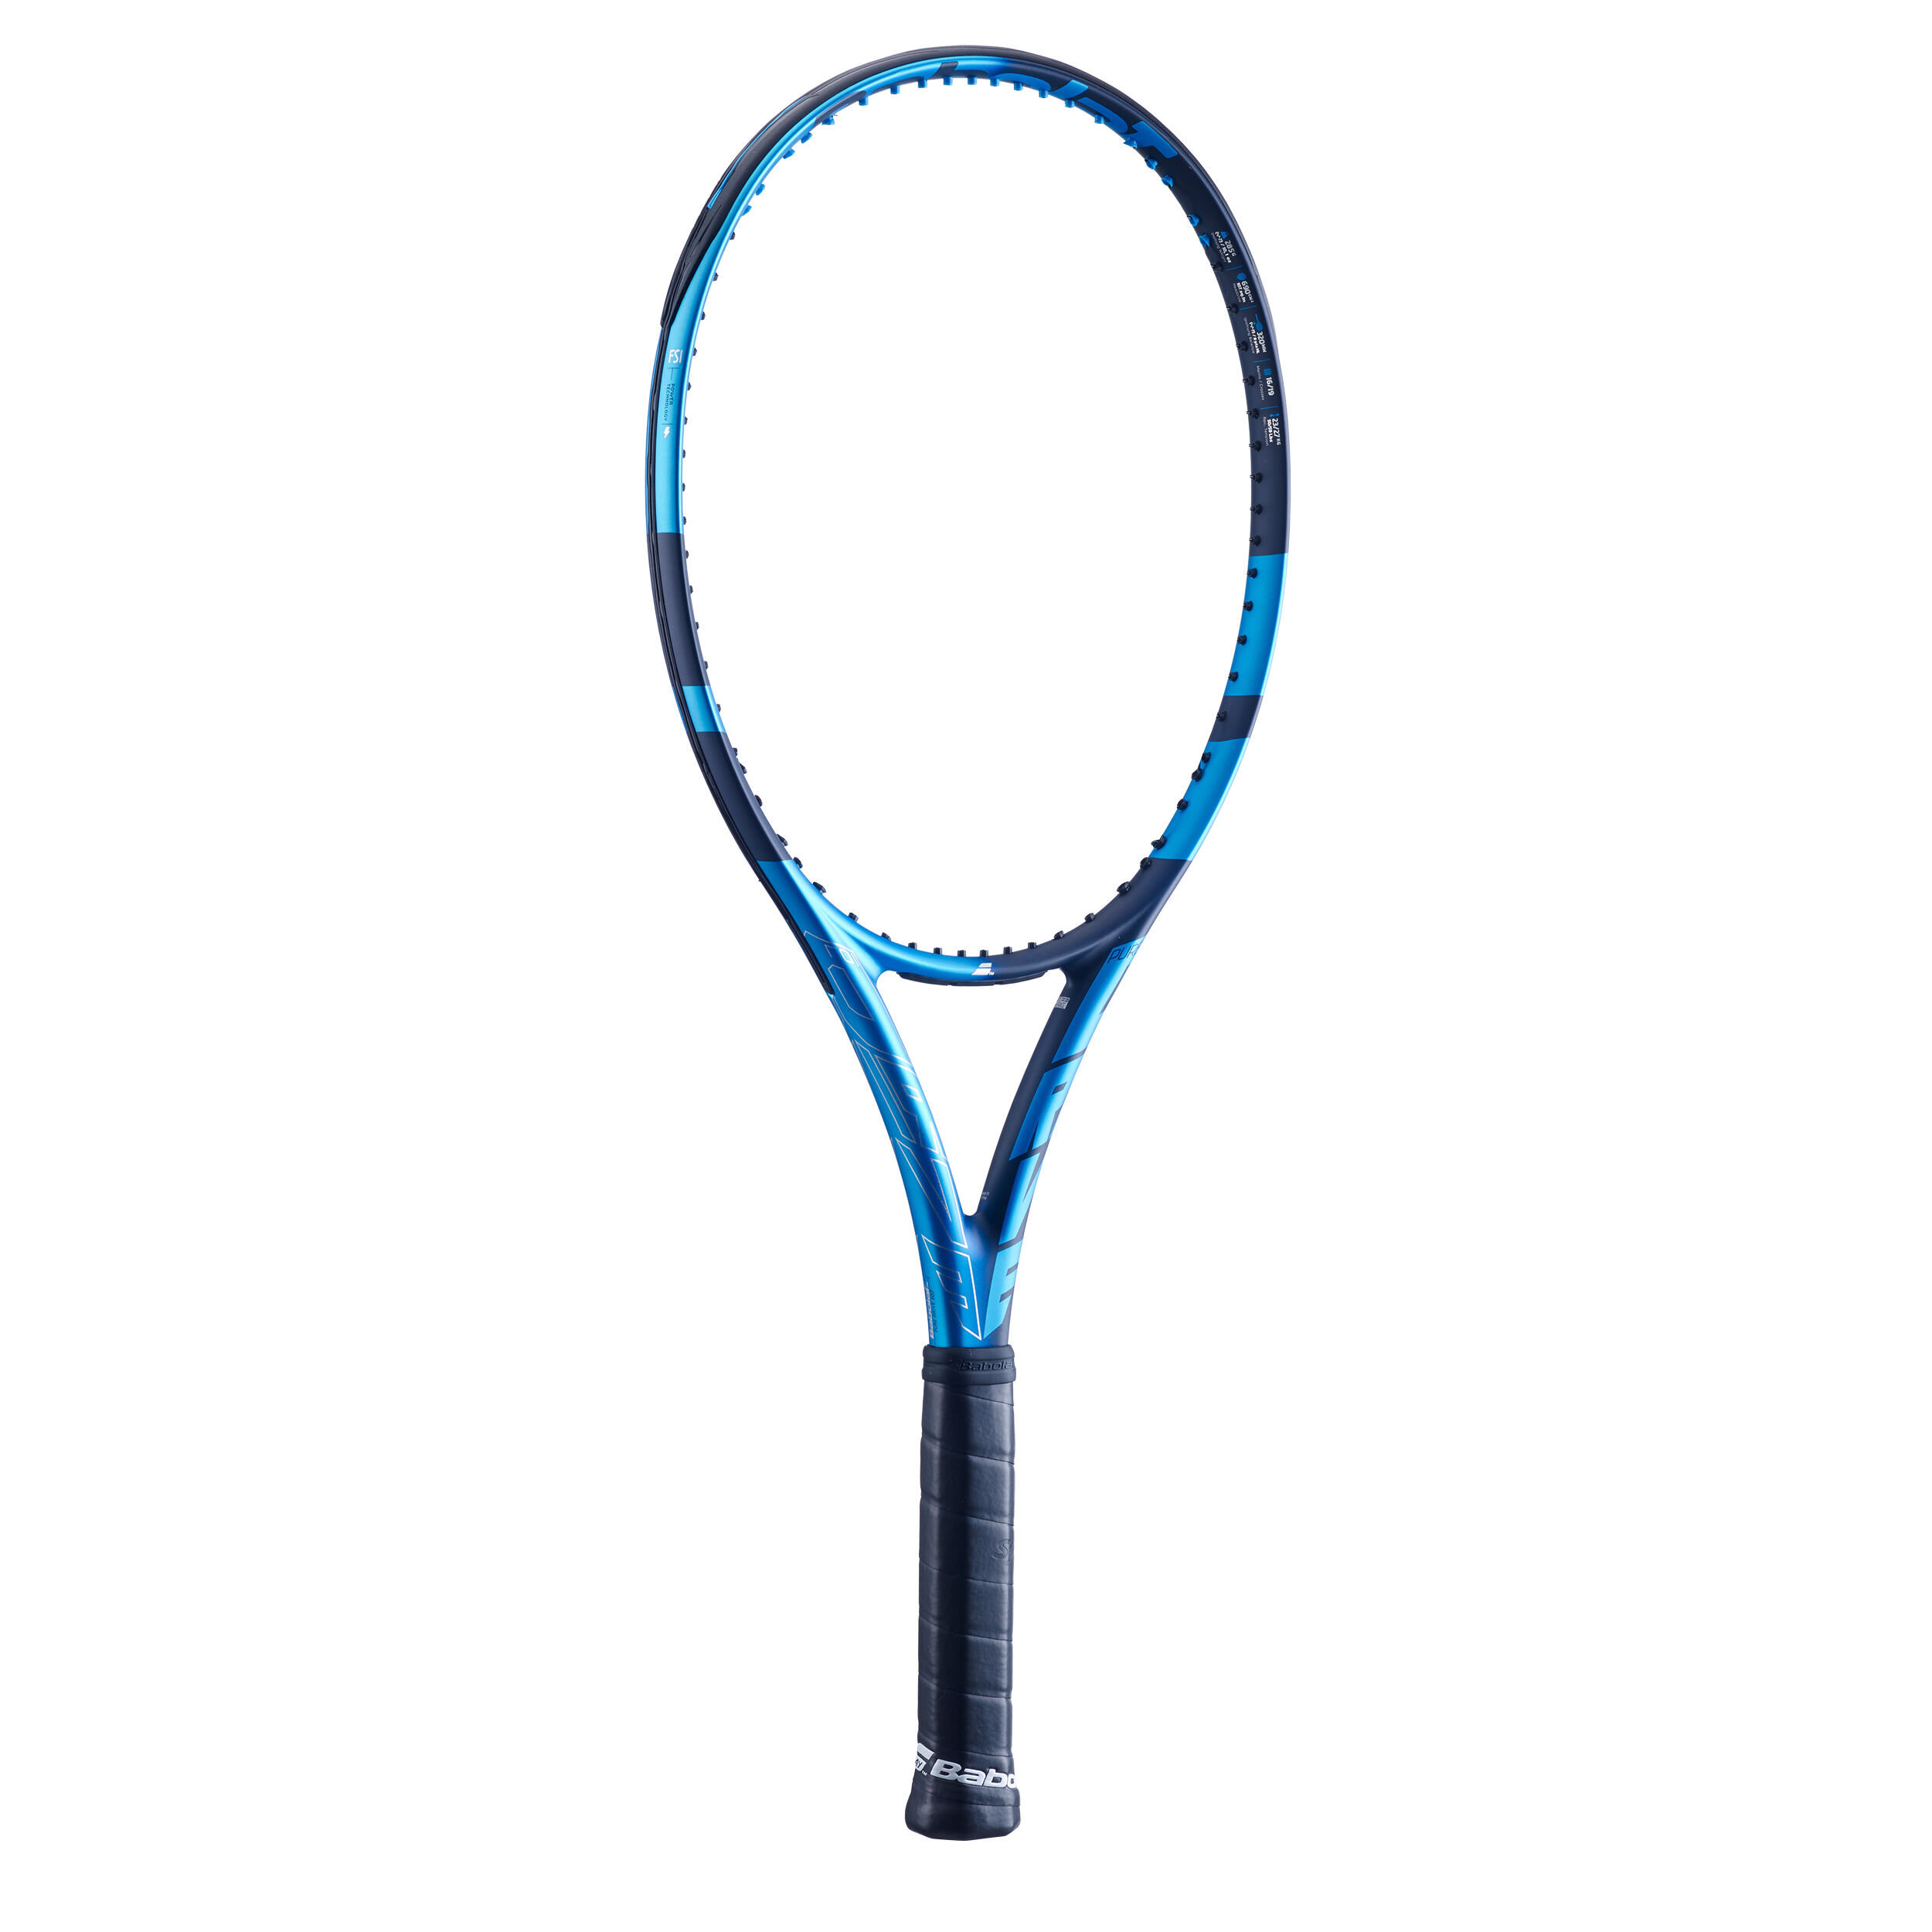 Babolat Pure Drive Tennisschläger besaitet NEU UVP 219,95€ 